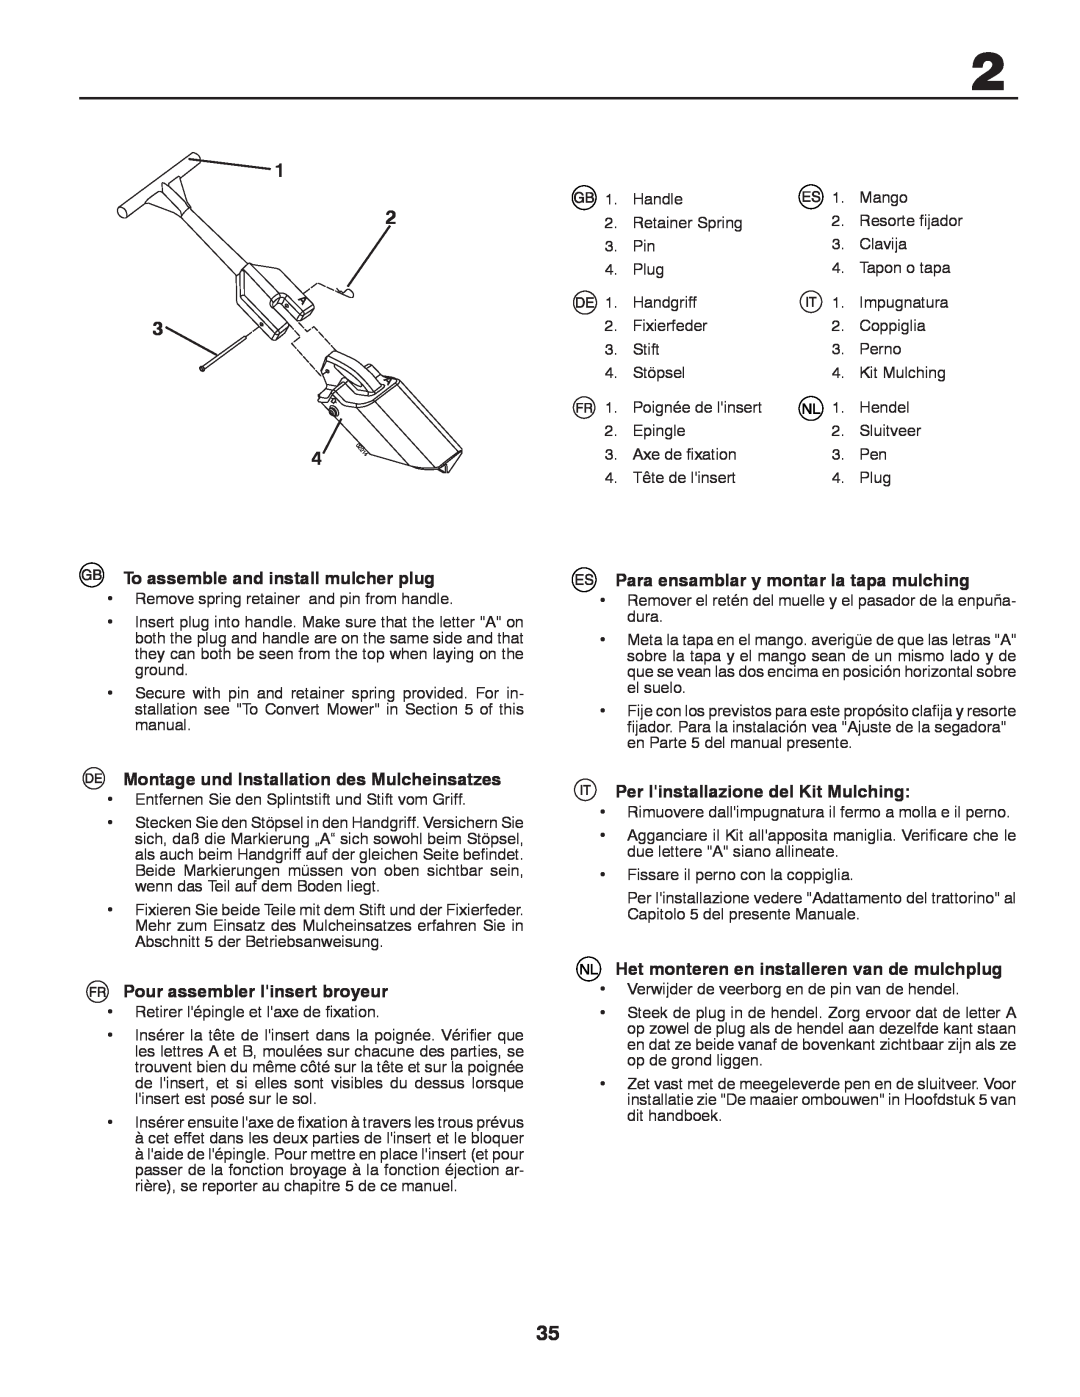 Husqvarna CTH140TWIN instruction manual To assemble and install mulcher plug, Montage und Installation des Mulcheinsatzes 